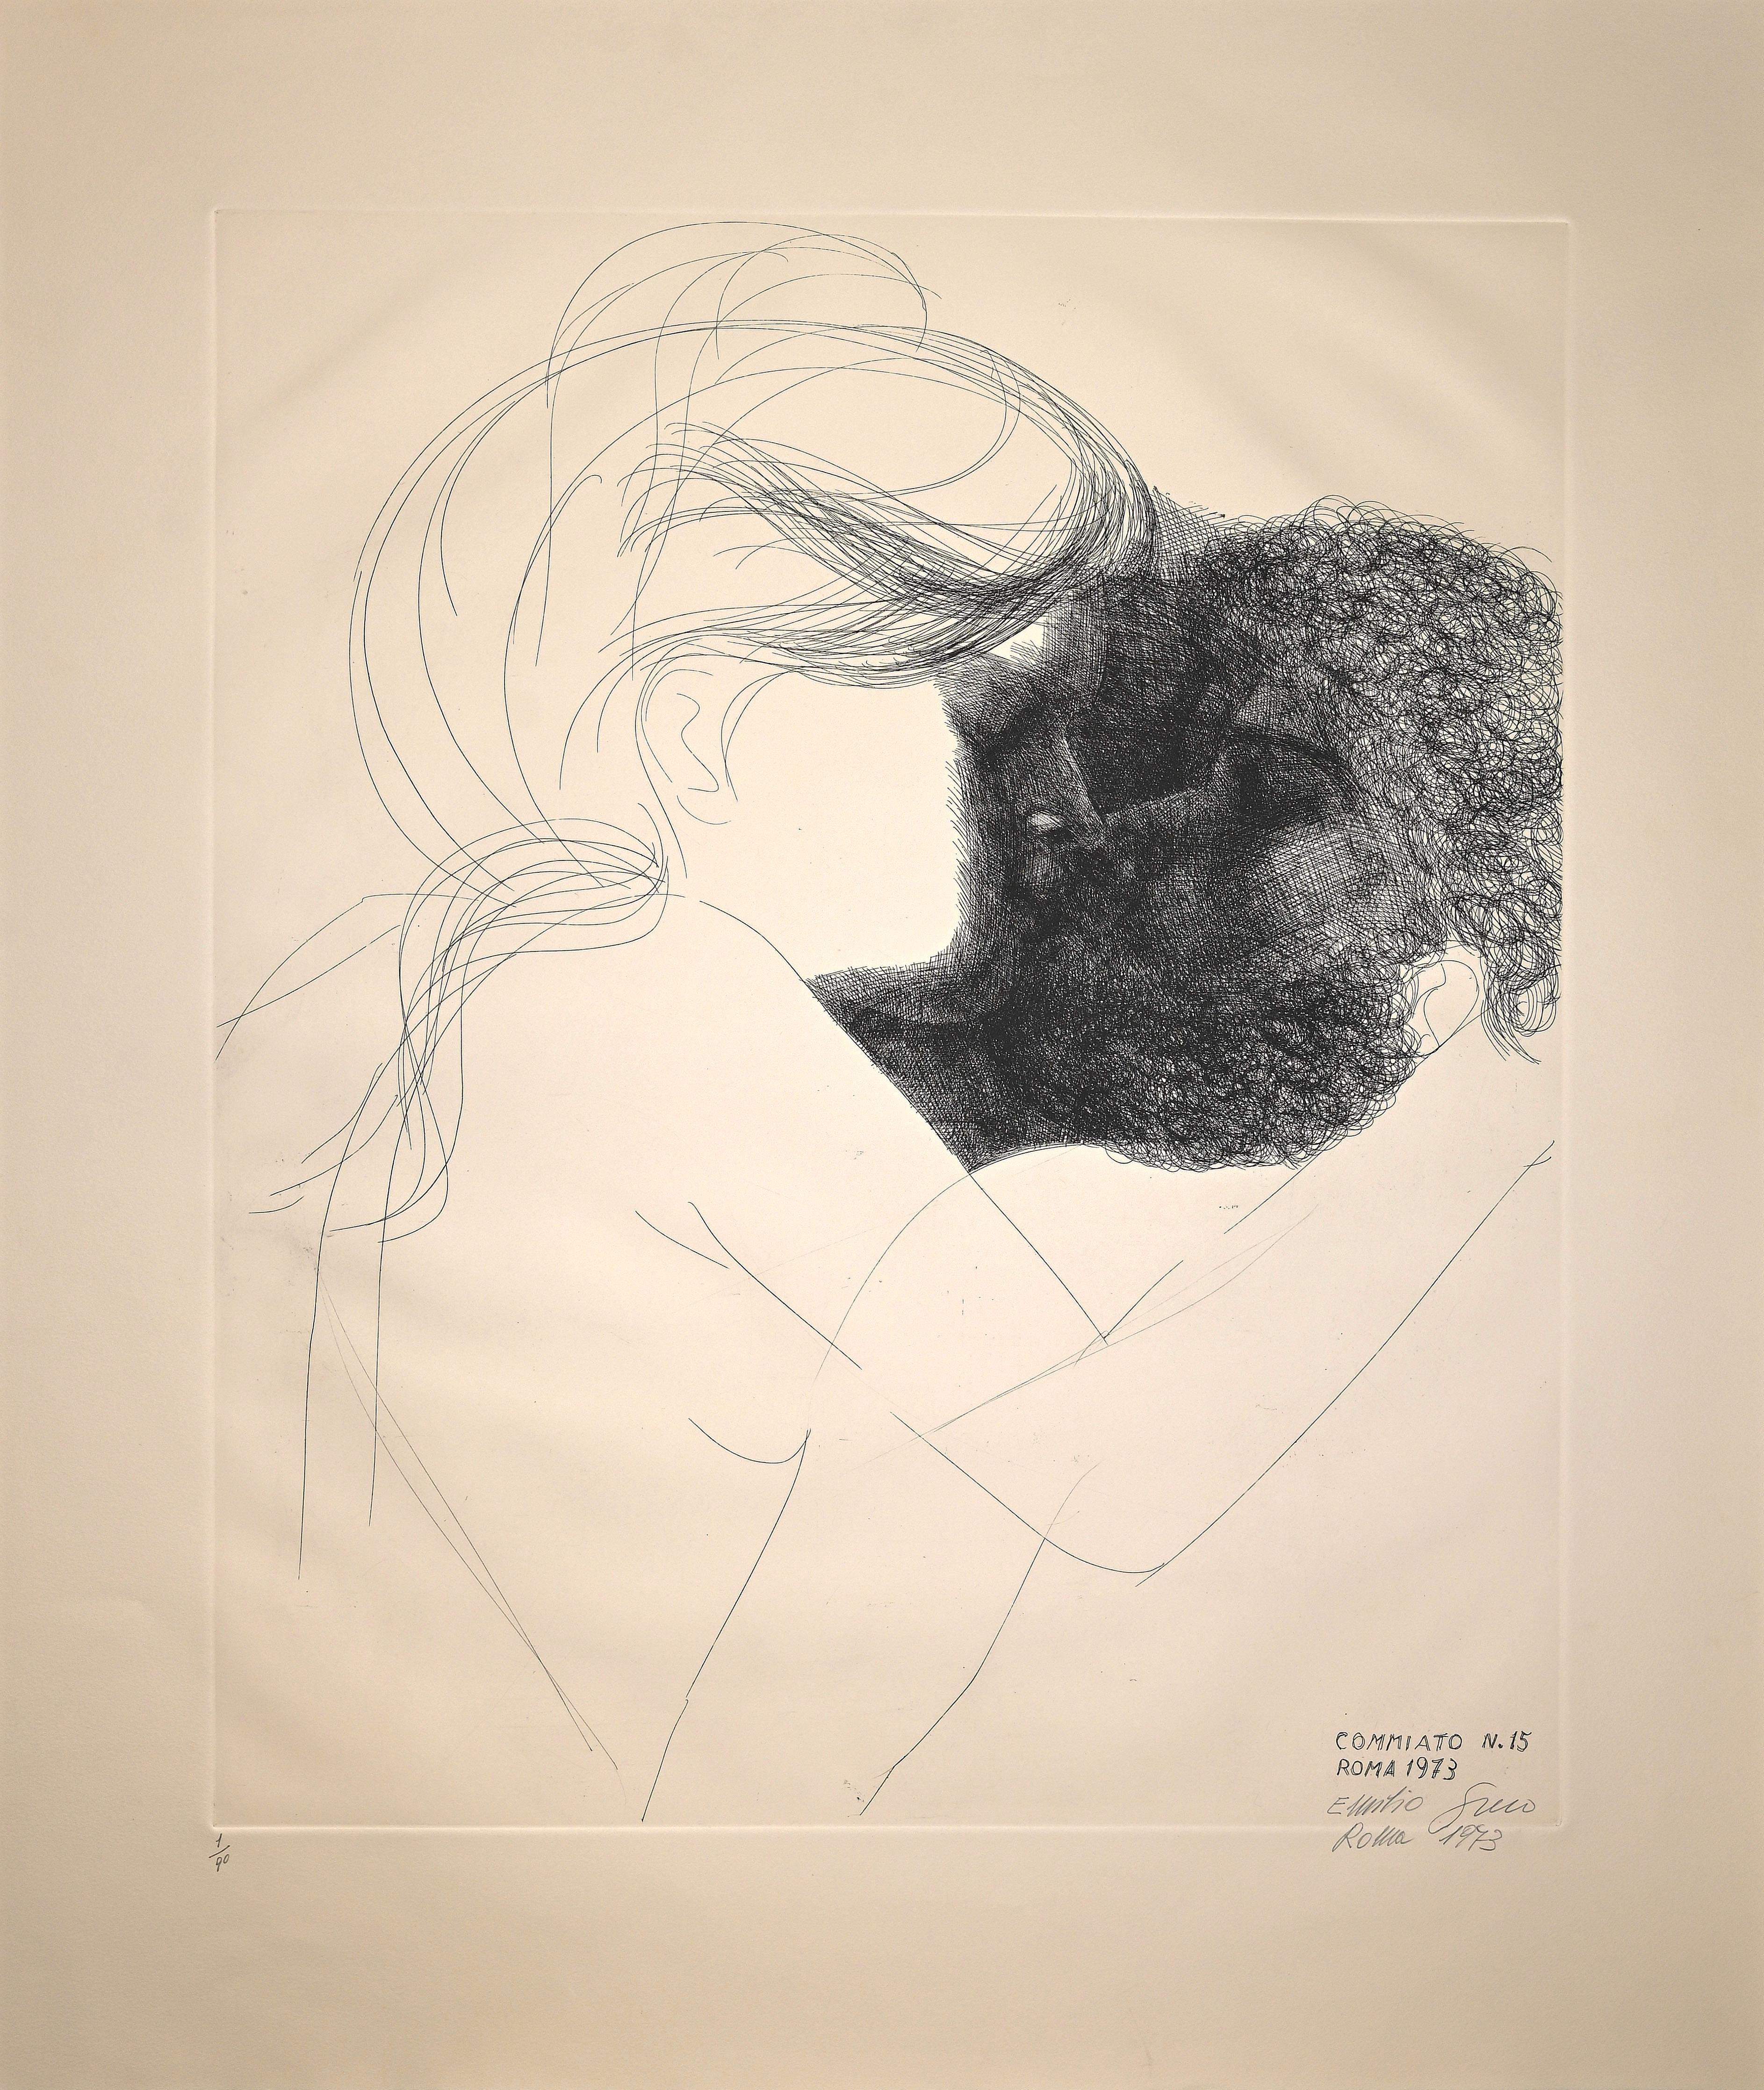 Emilio Greco Figurative Print - Commiato no. 15 (Farewell no. 15) - Etching by E. Greco - 1973